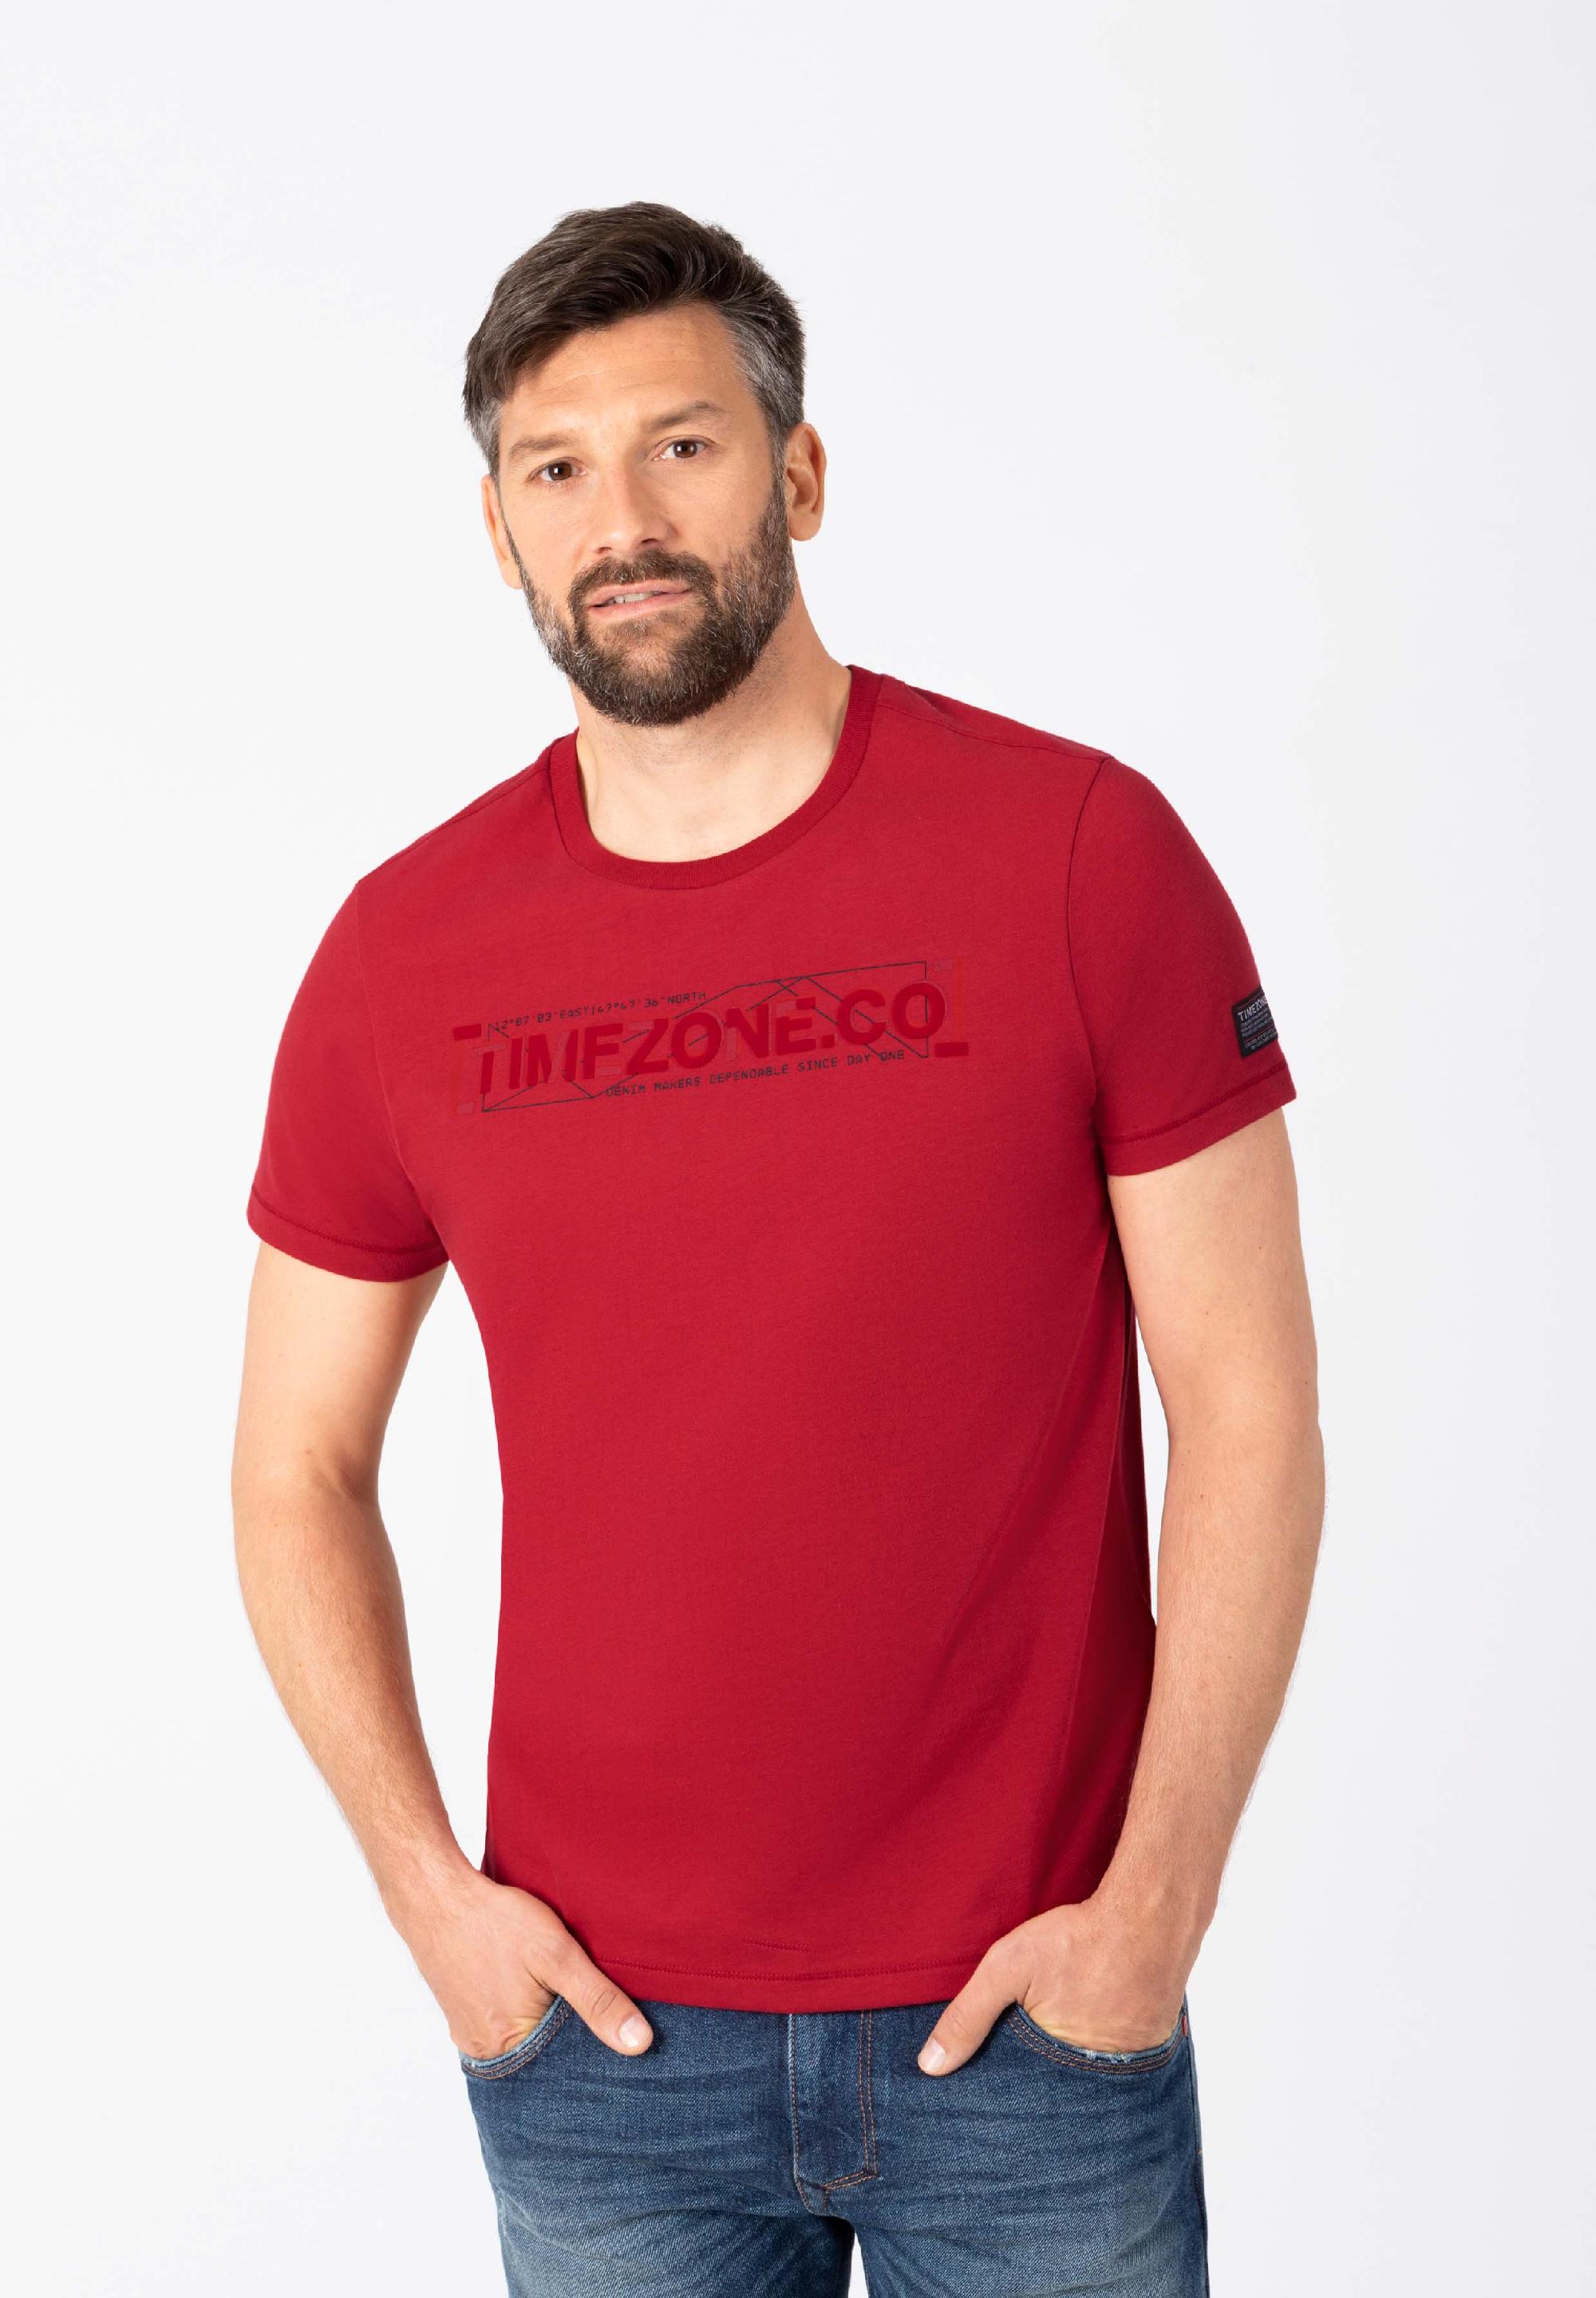 Timezone T-Shirt print